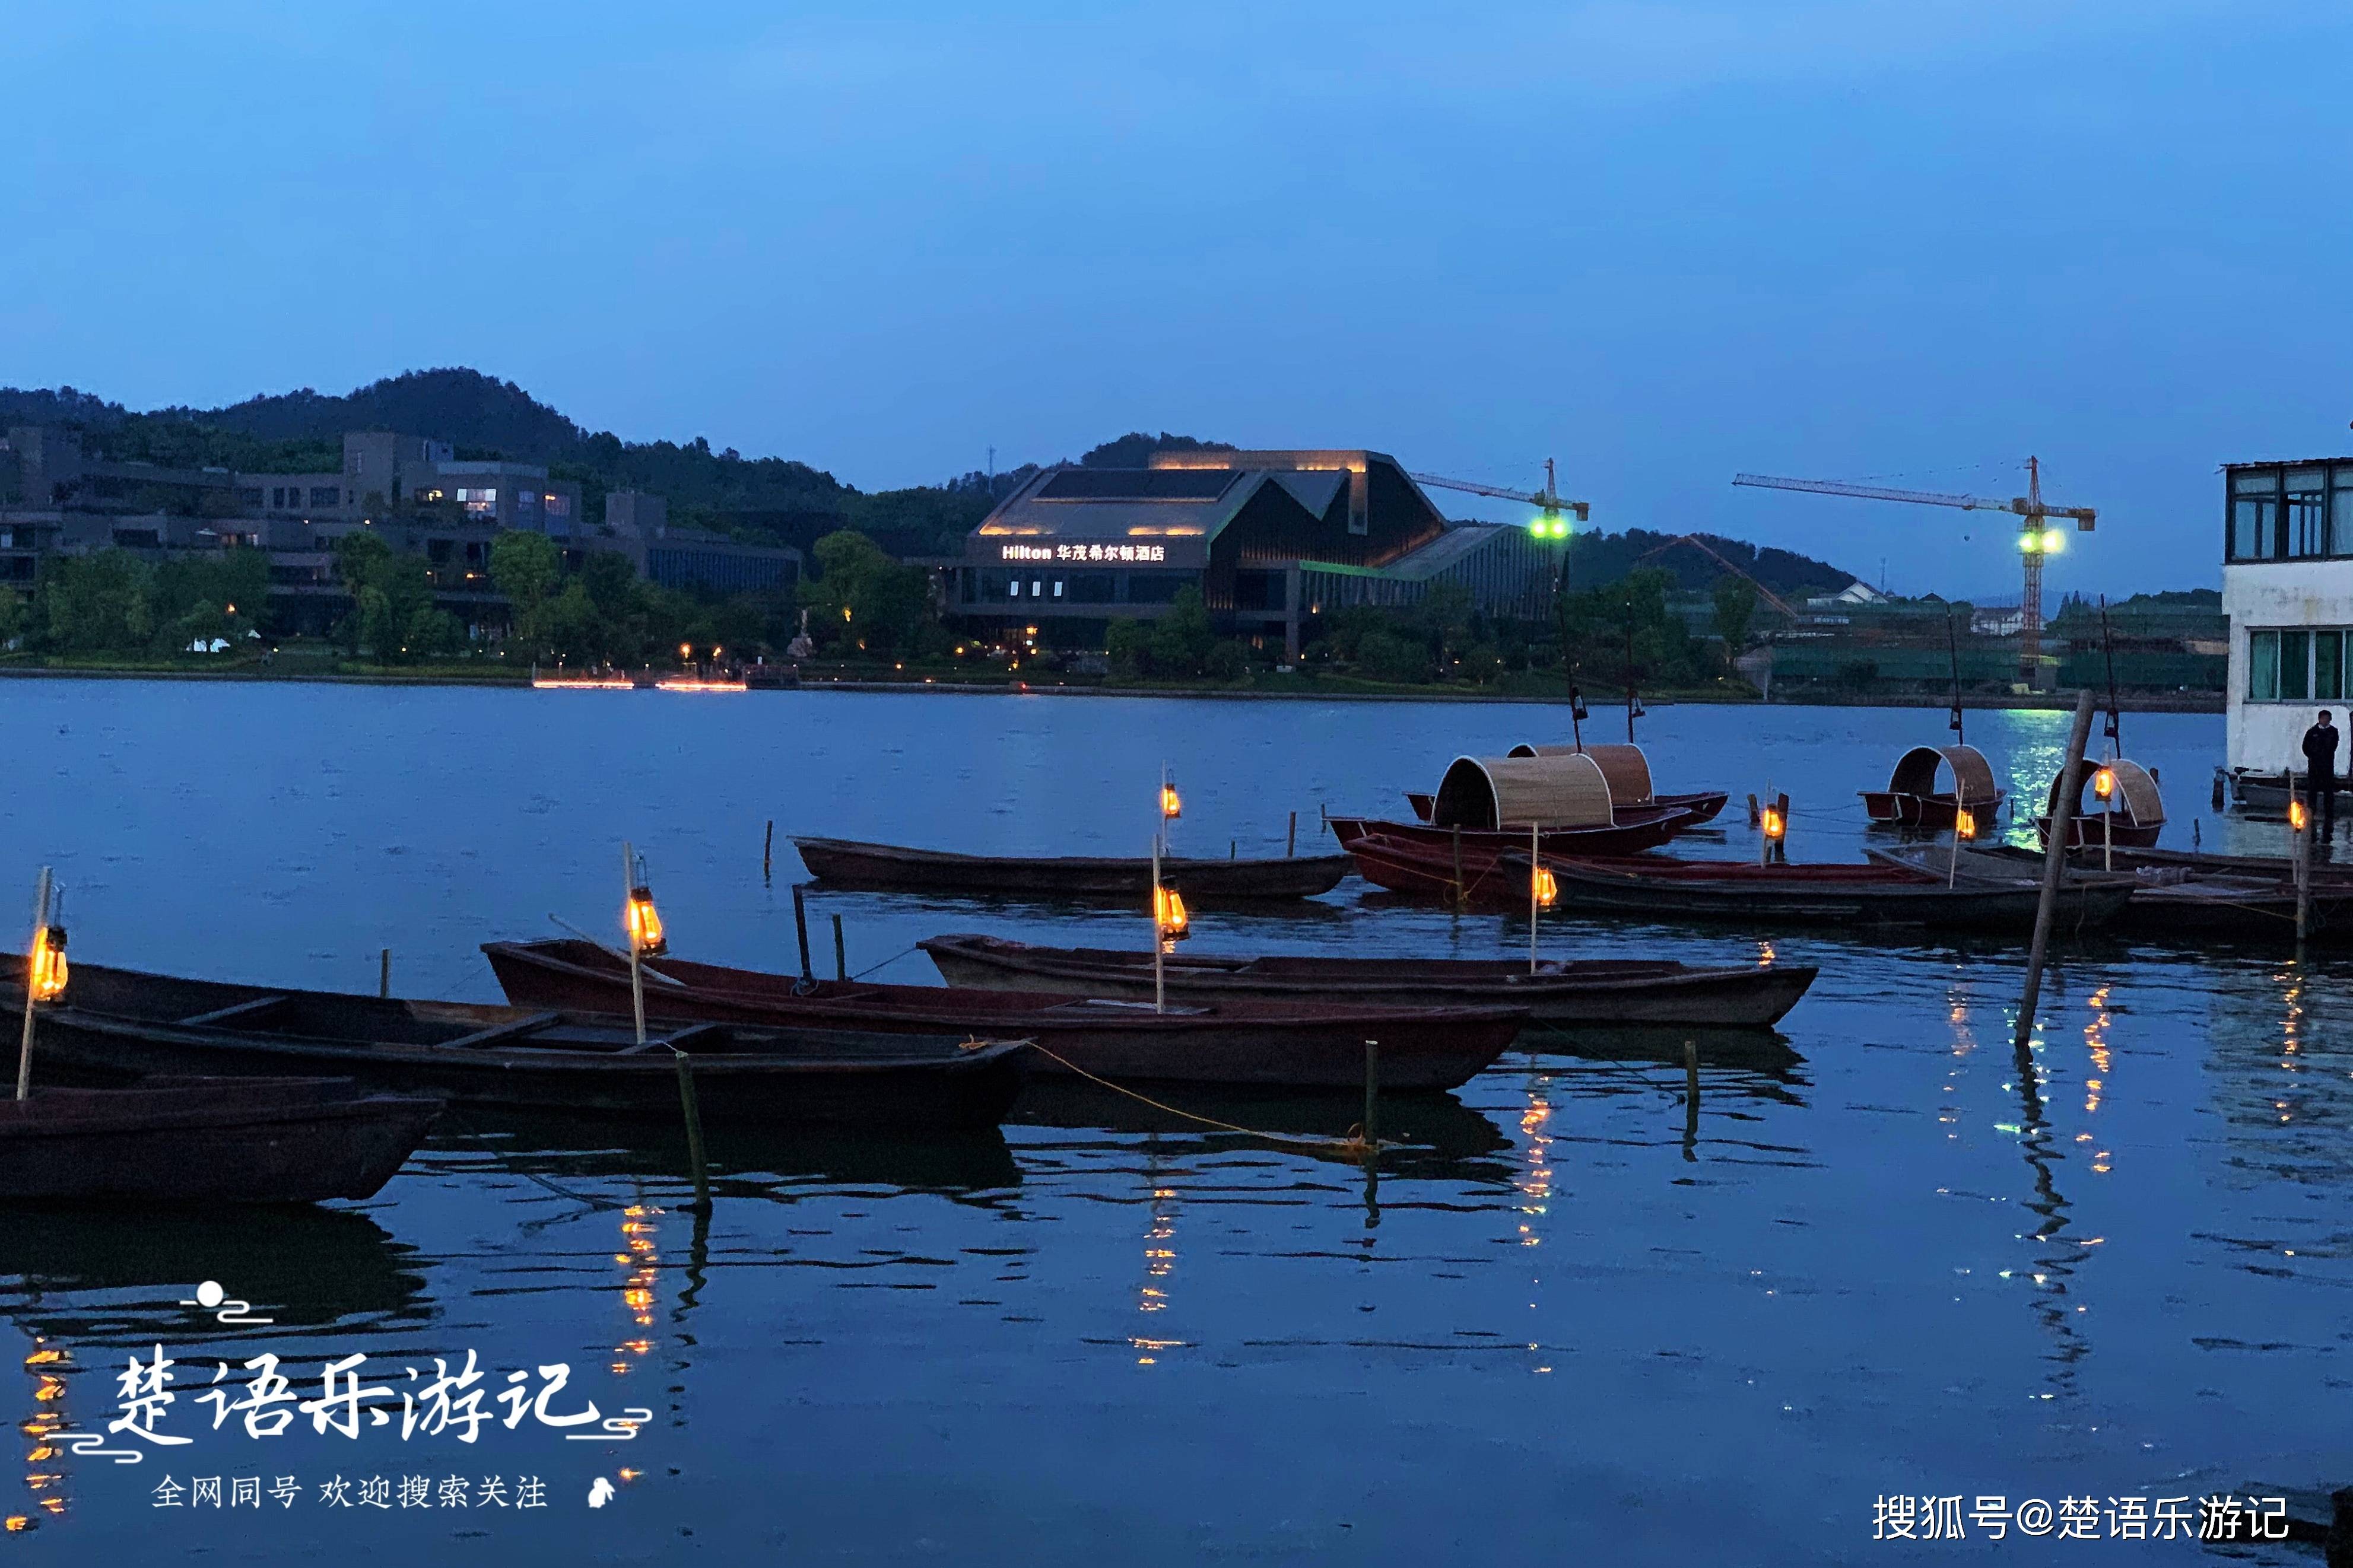 宁波东钱湖畔的古村落,殷湾渔火列入钱湖十景,灯塔成为网红景点